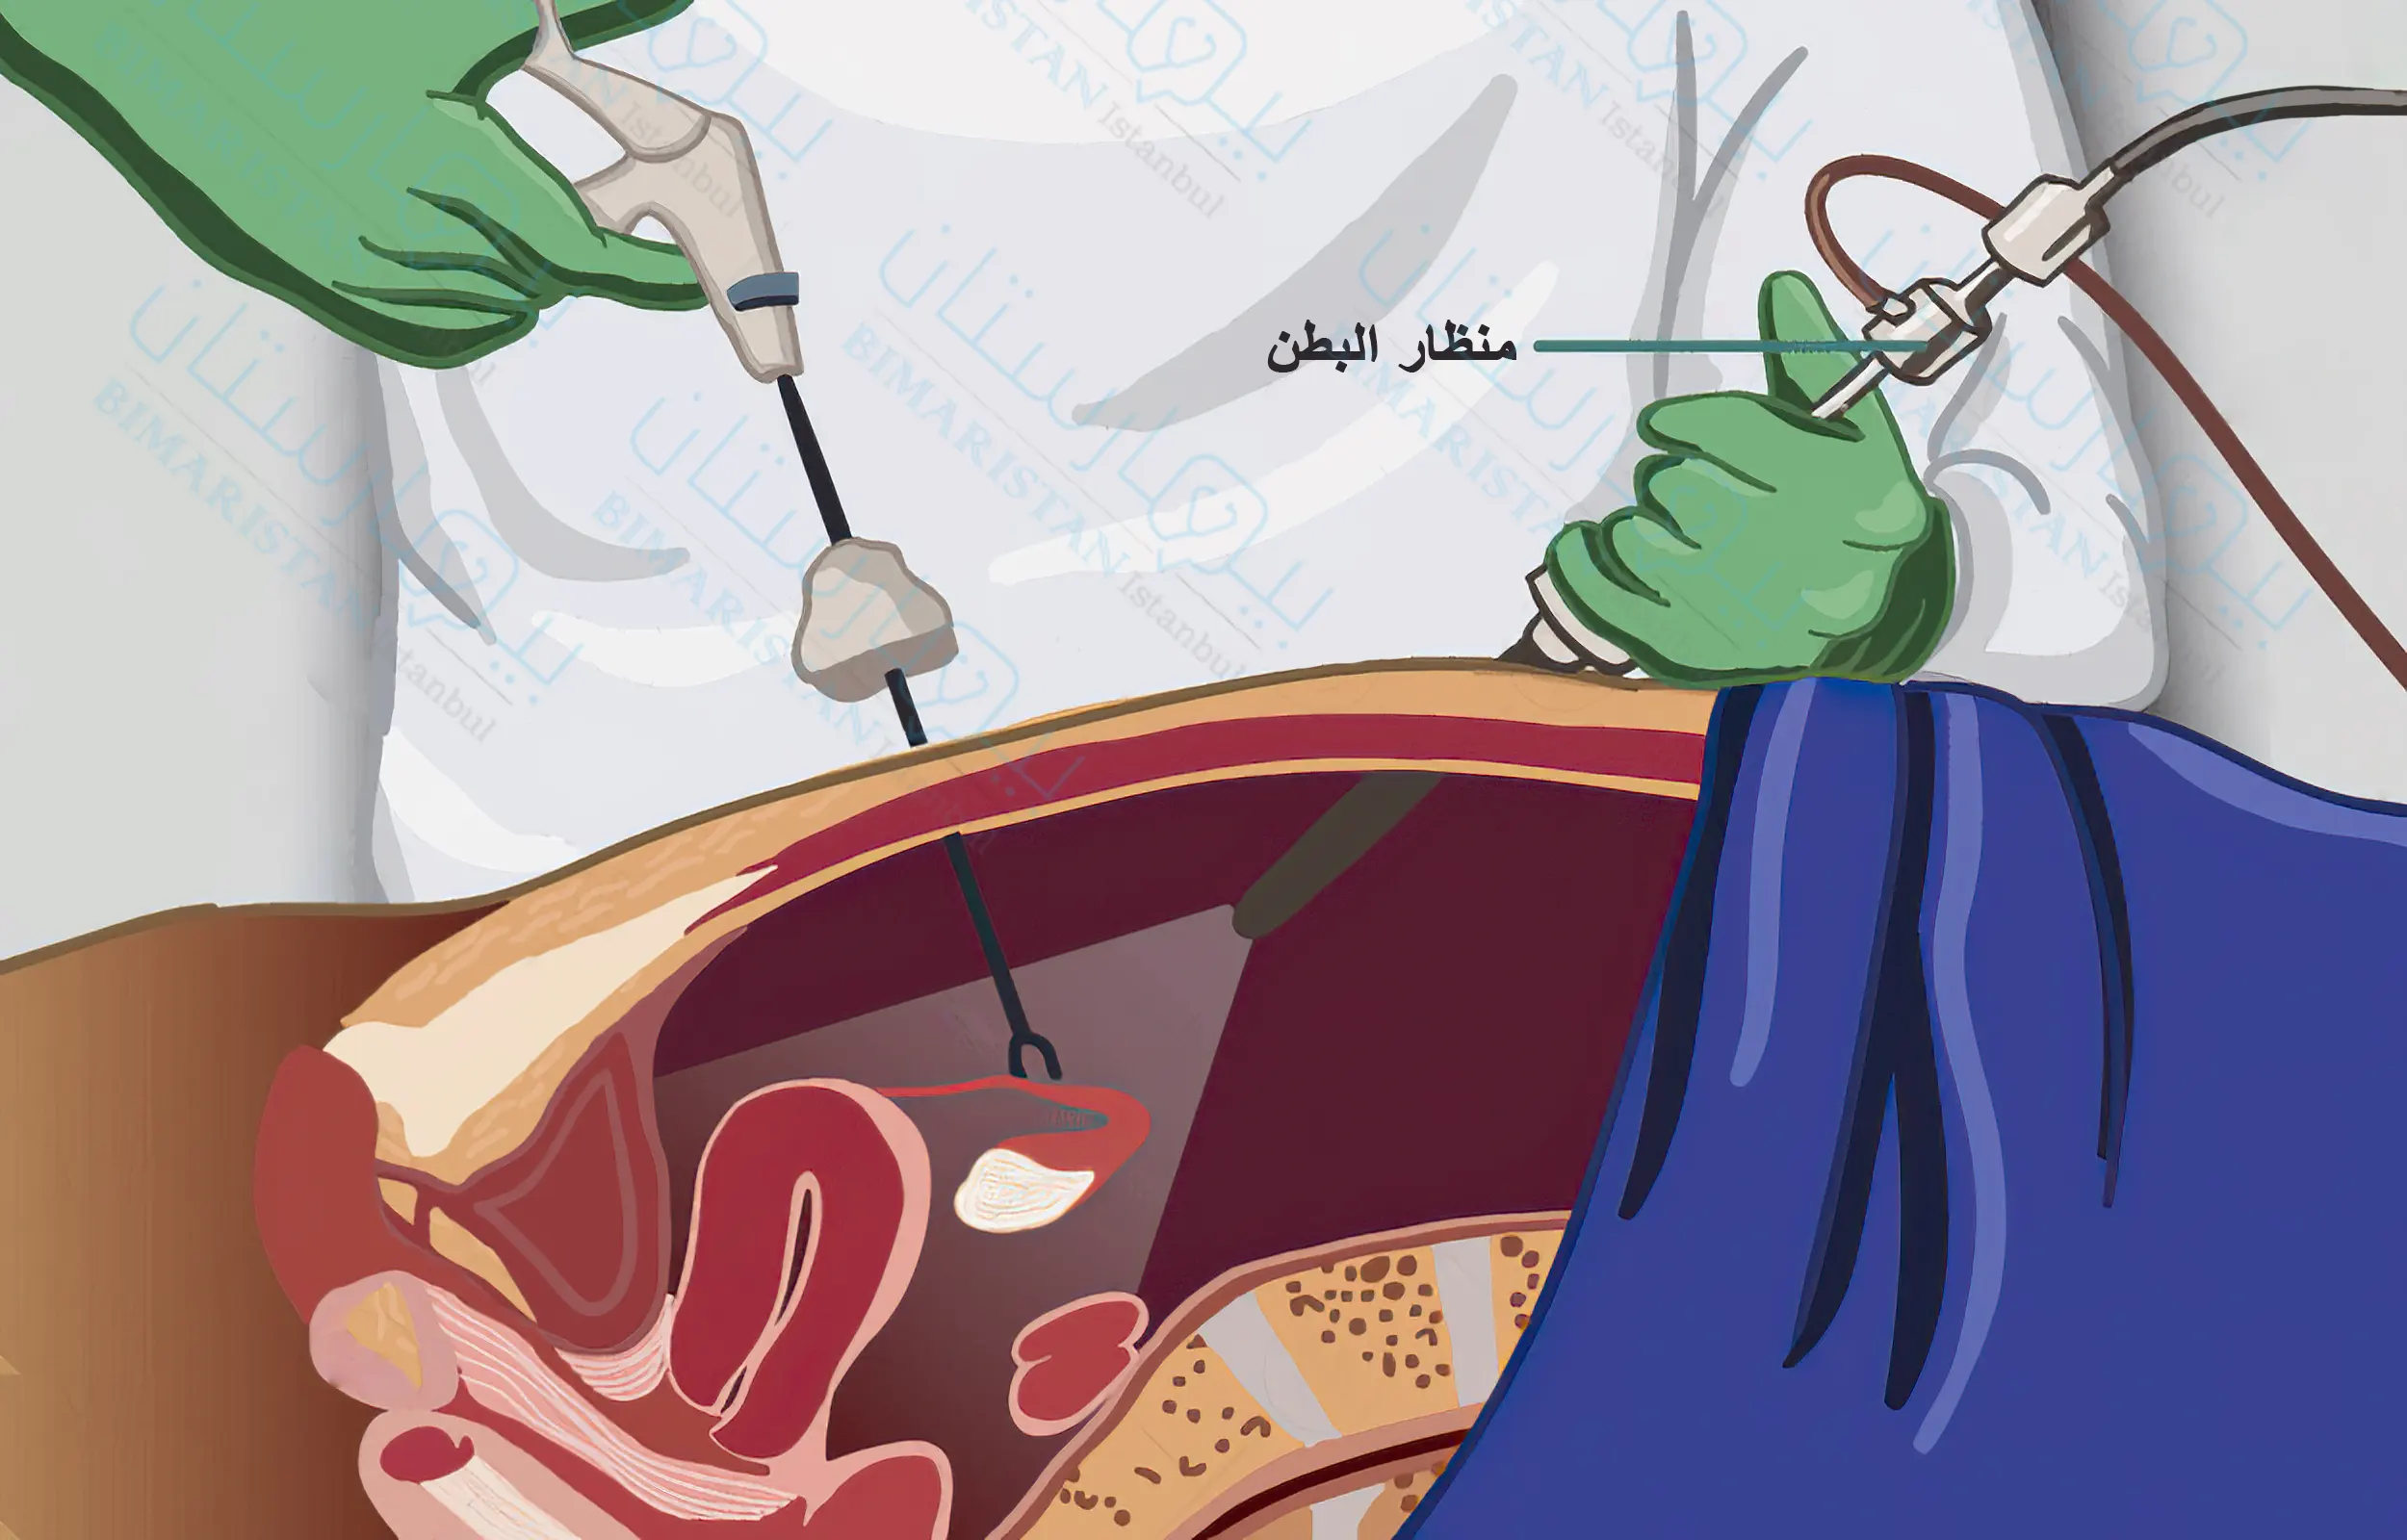 صورة توضح عملية استئصال الورم العضلي الرحمي بالمنظار